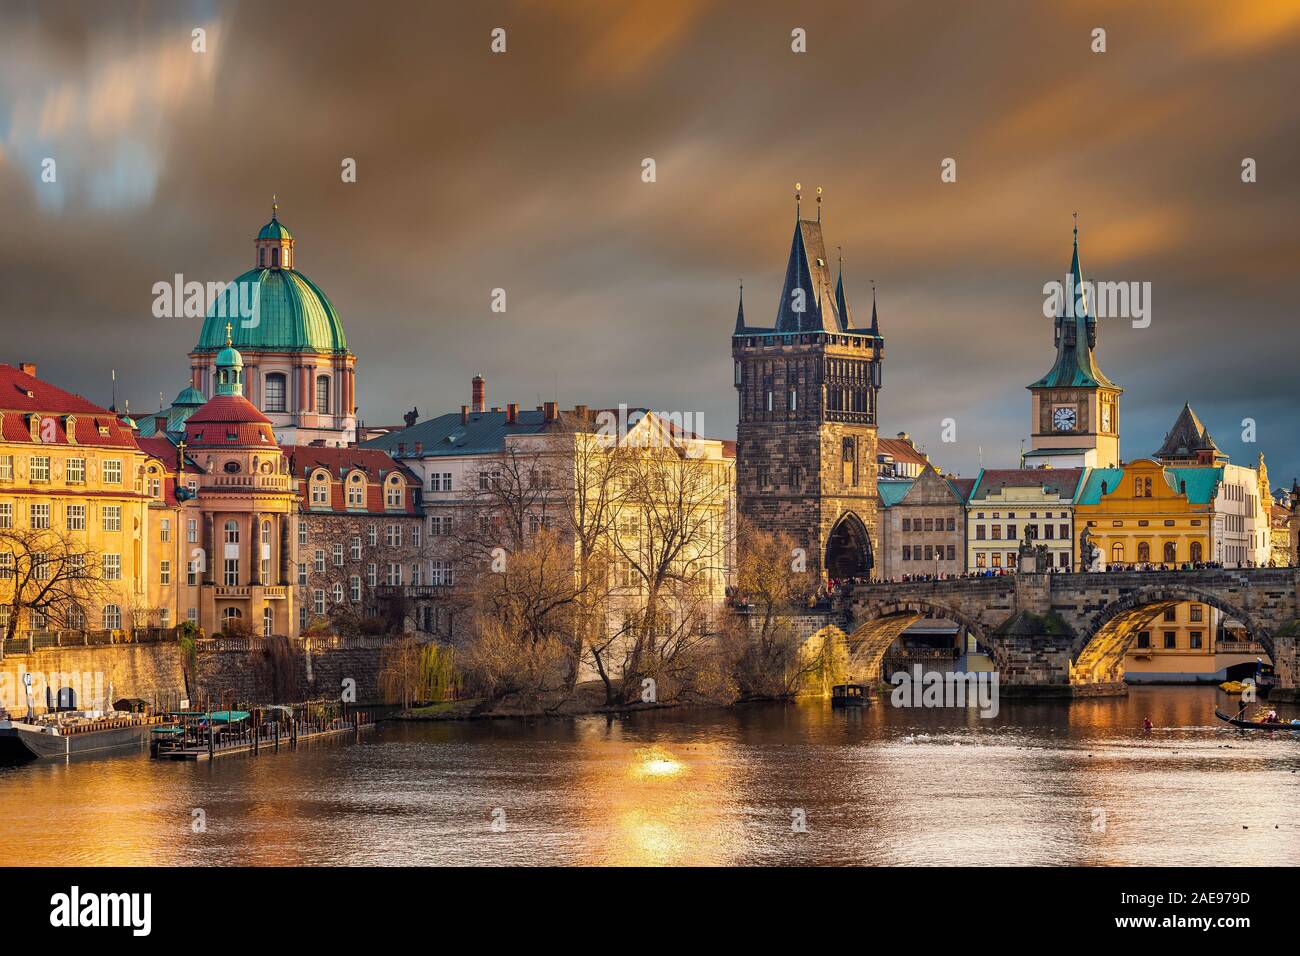 Prag, Tschechische Republik - Die weltberühmte Karlsbrücke (Karluv most) mit St. Francis von Assisi Kirche und Uhrturm mit wunderschönen Golden Sunset l Stockfoto